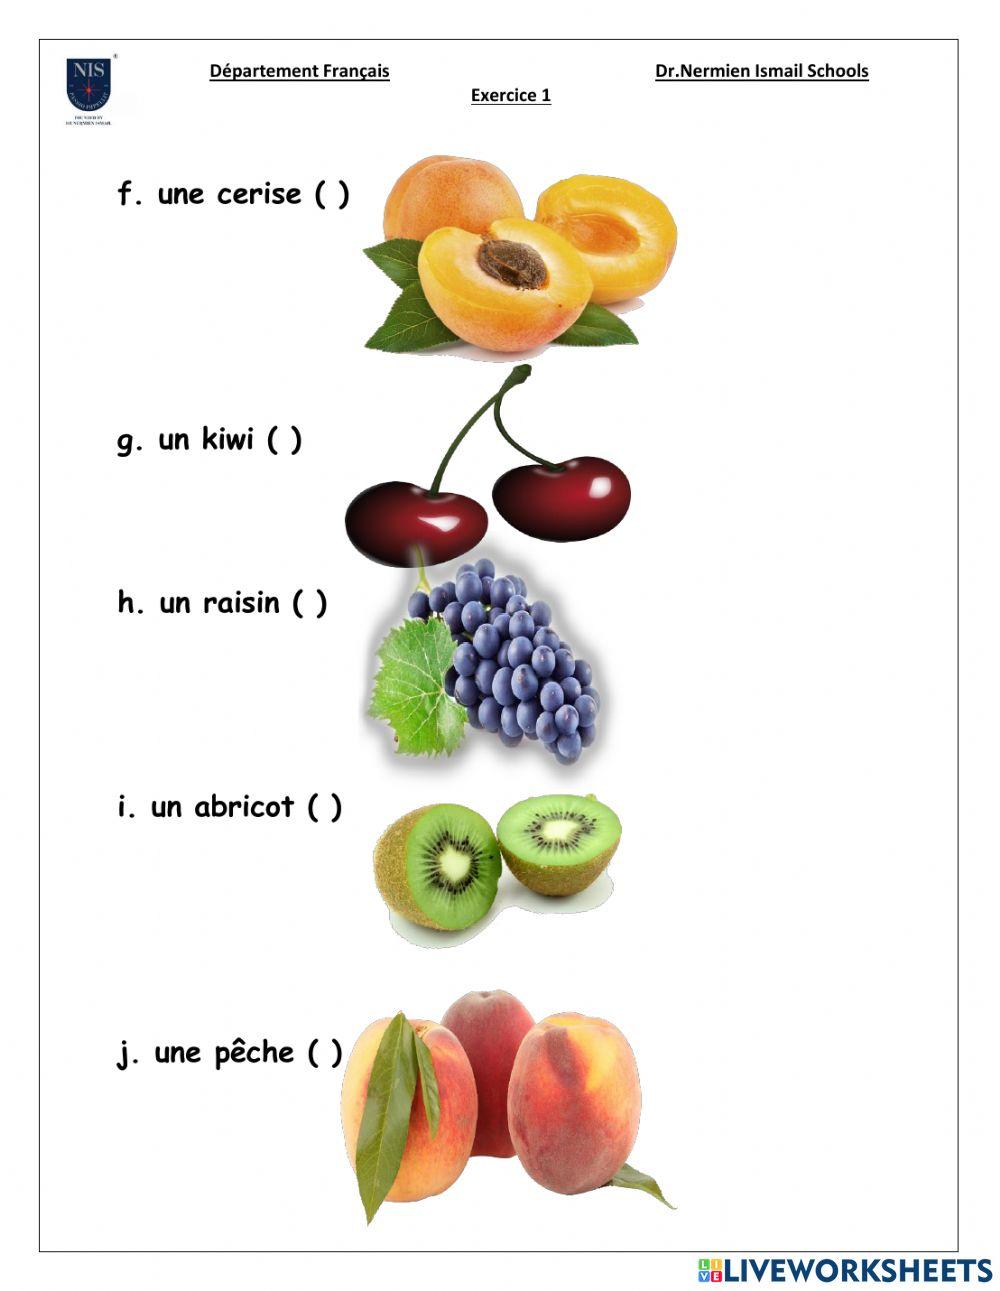 Les fruits(Vrai ou Faux)